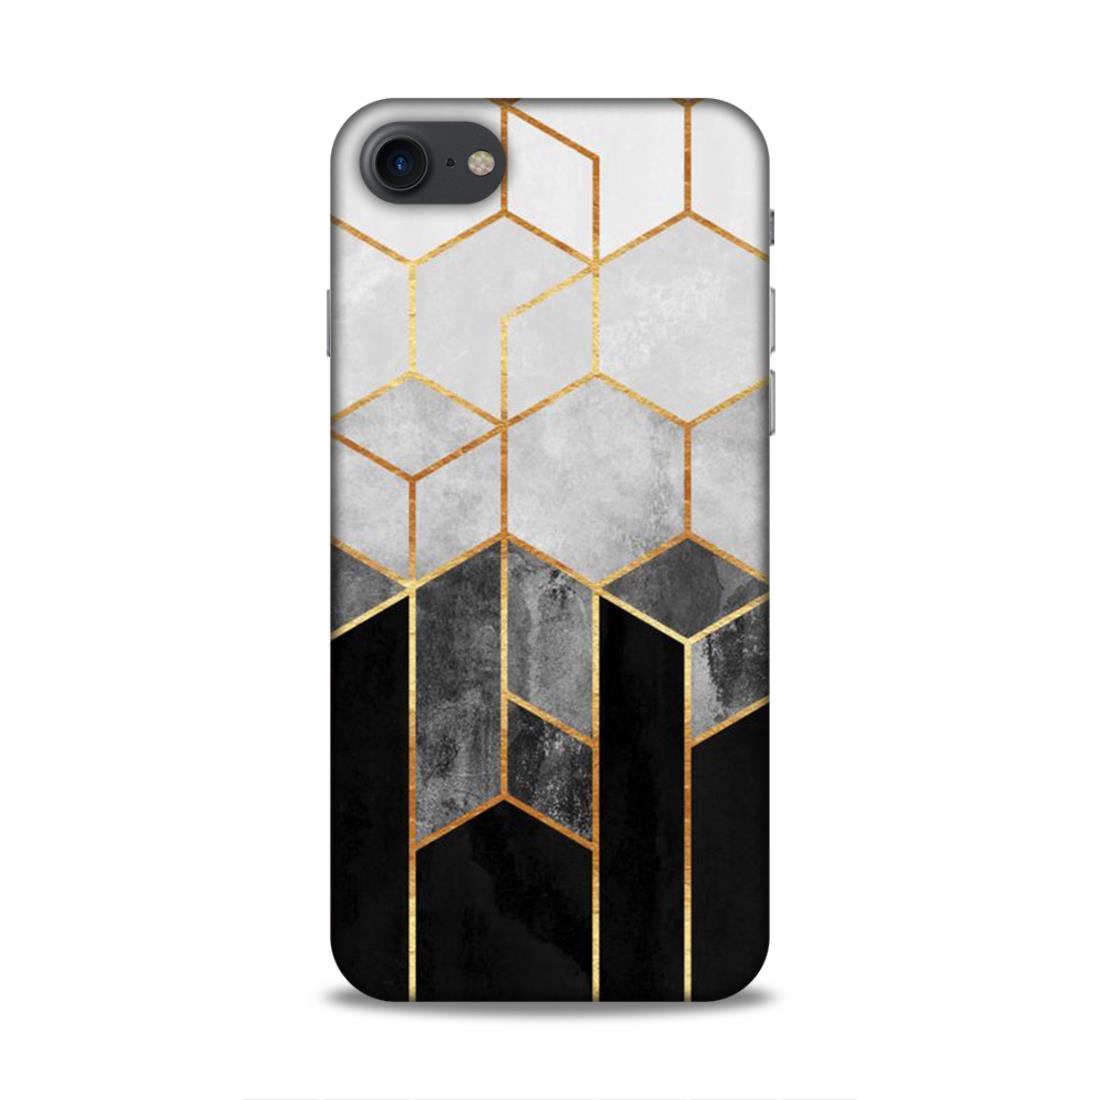 Hexagonal White Black Pattern Hard Back Case For Apple iPhone 7 / 8 / SE 2020